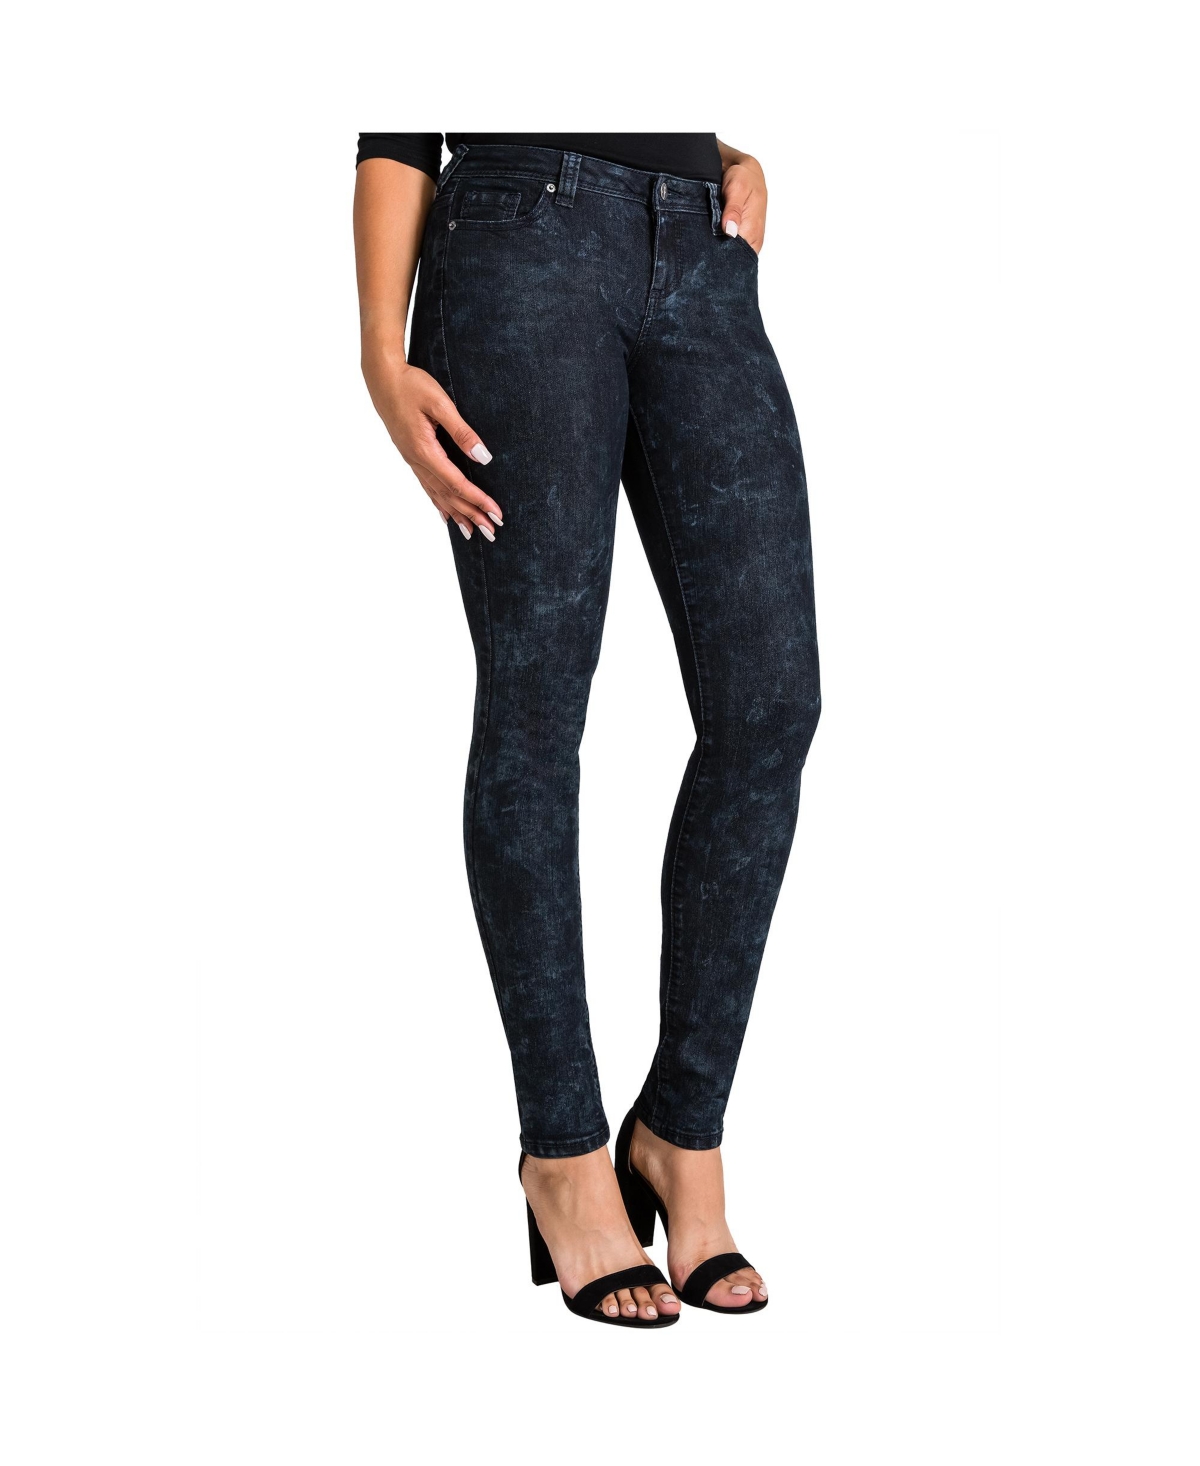 Women's Curvy Fit Stretch Denim Dark Wash Mid-Rise Skinny Jeans - Black eye wash